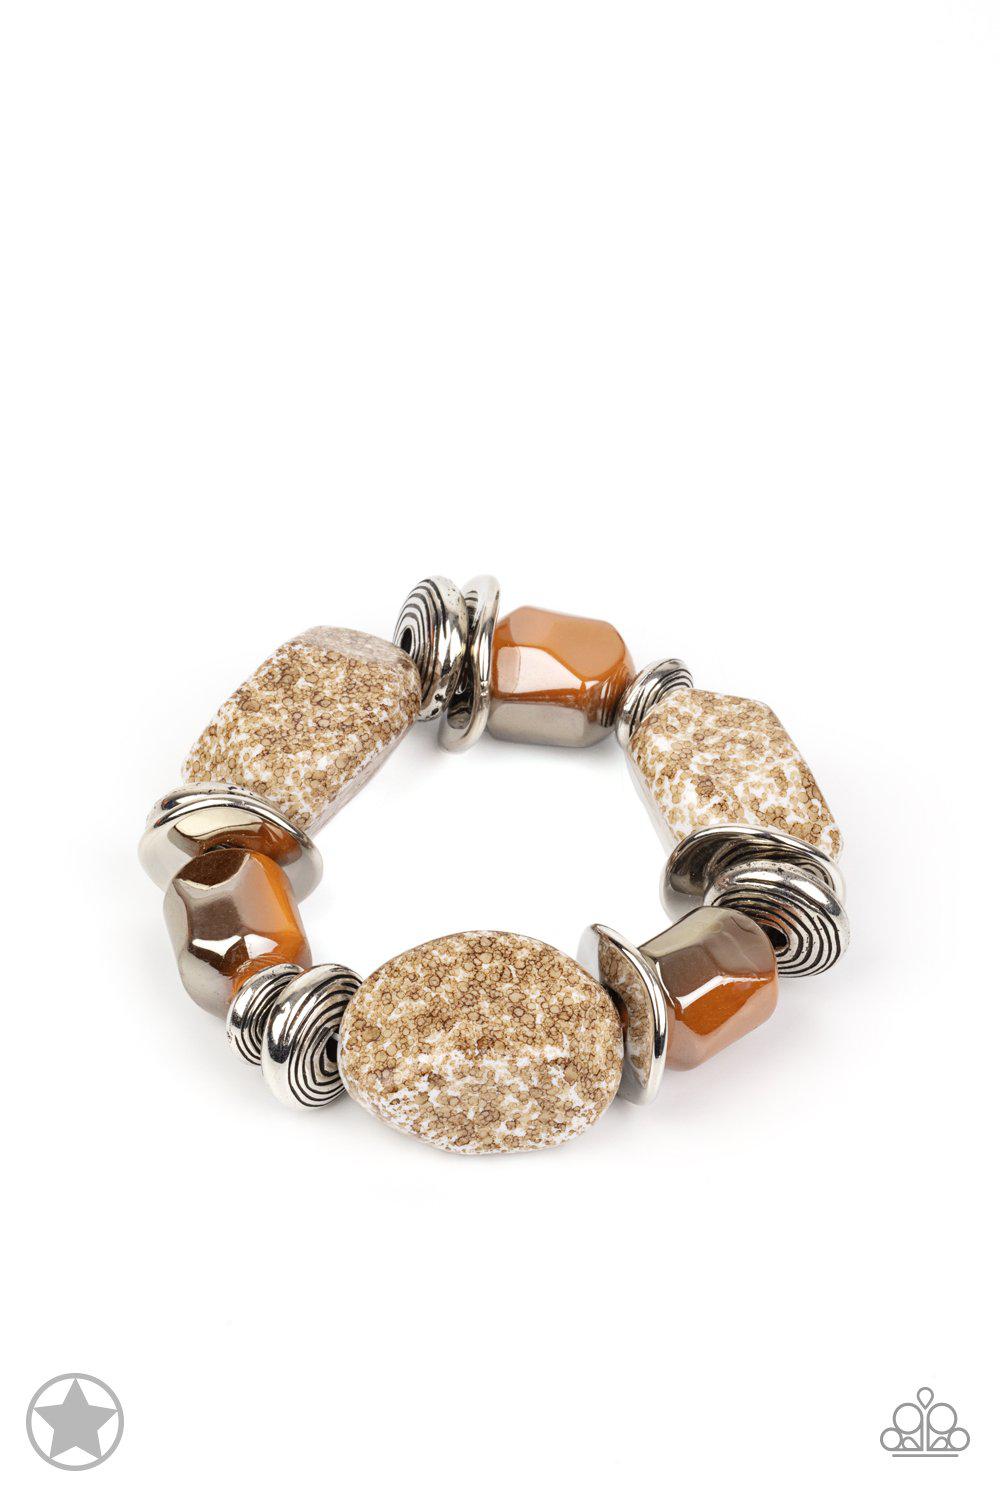 Glaze of Glory Peach Chunky Bead Stretch Bracelet - Paparazzi Accessories - lightbox -CarasShop.com - $5 Jewelry by Cara Jewels